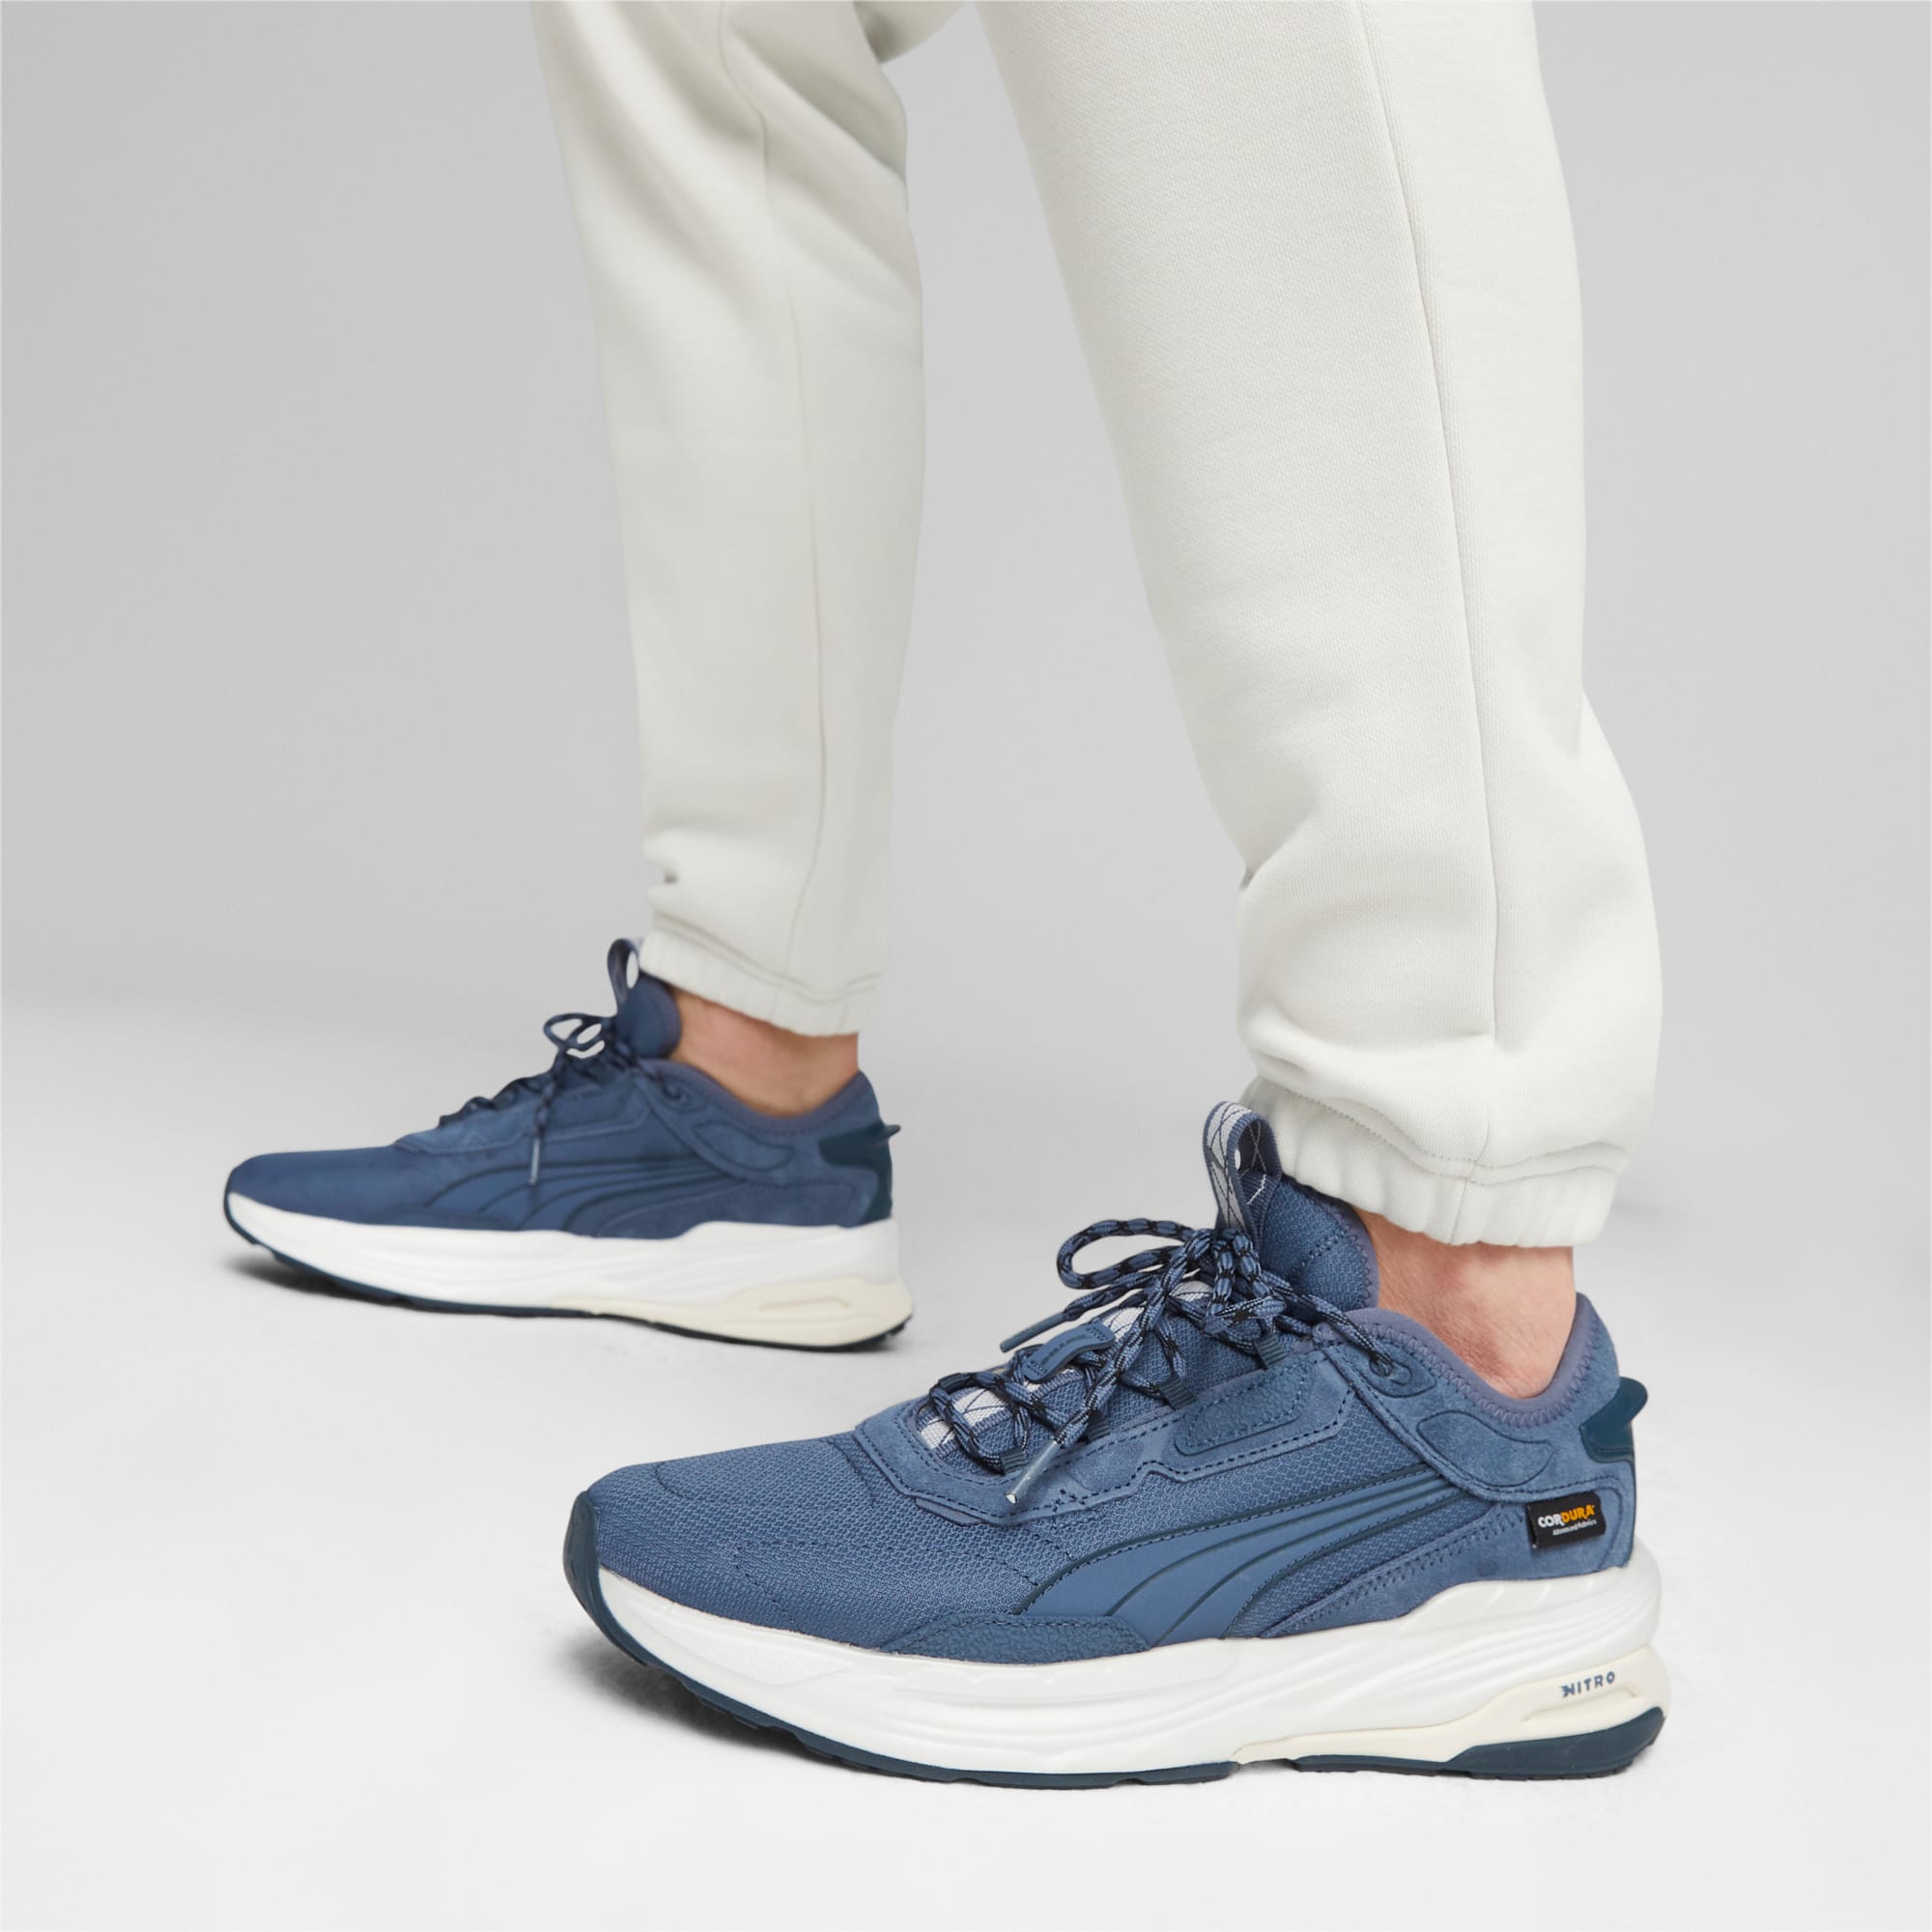 PUMA Extent NITRO Cordura® Sneakers Schuhe Für Herren, Blau/Weiß, Größe: 40, Schuhe